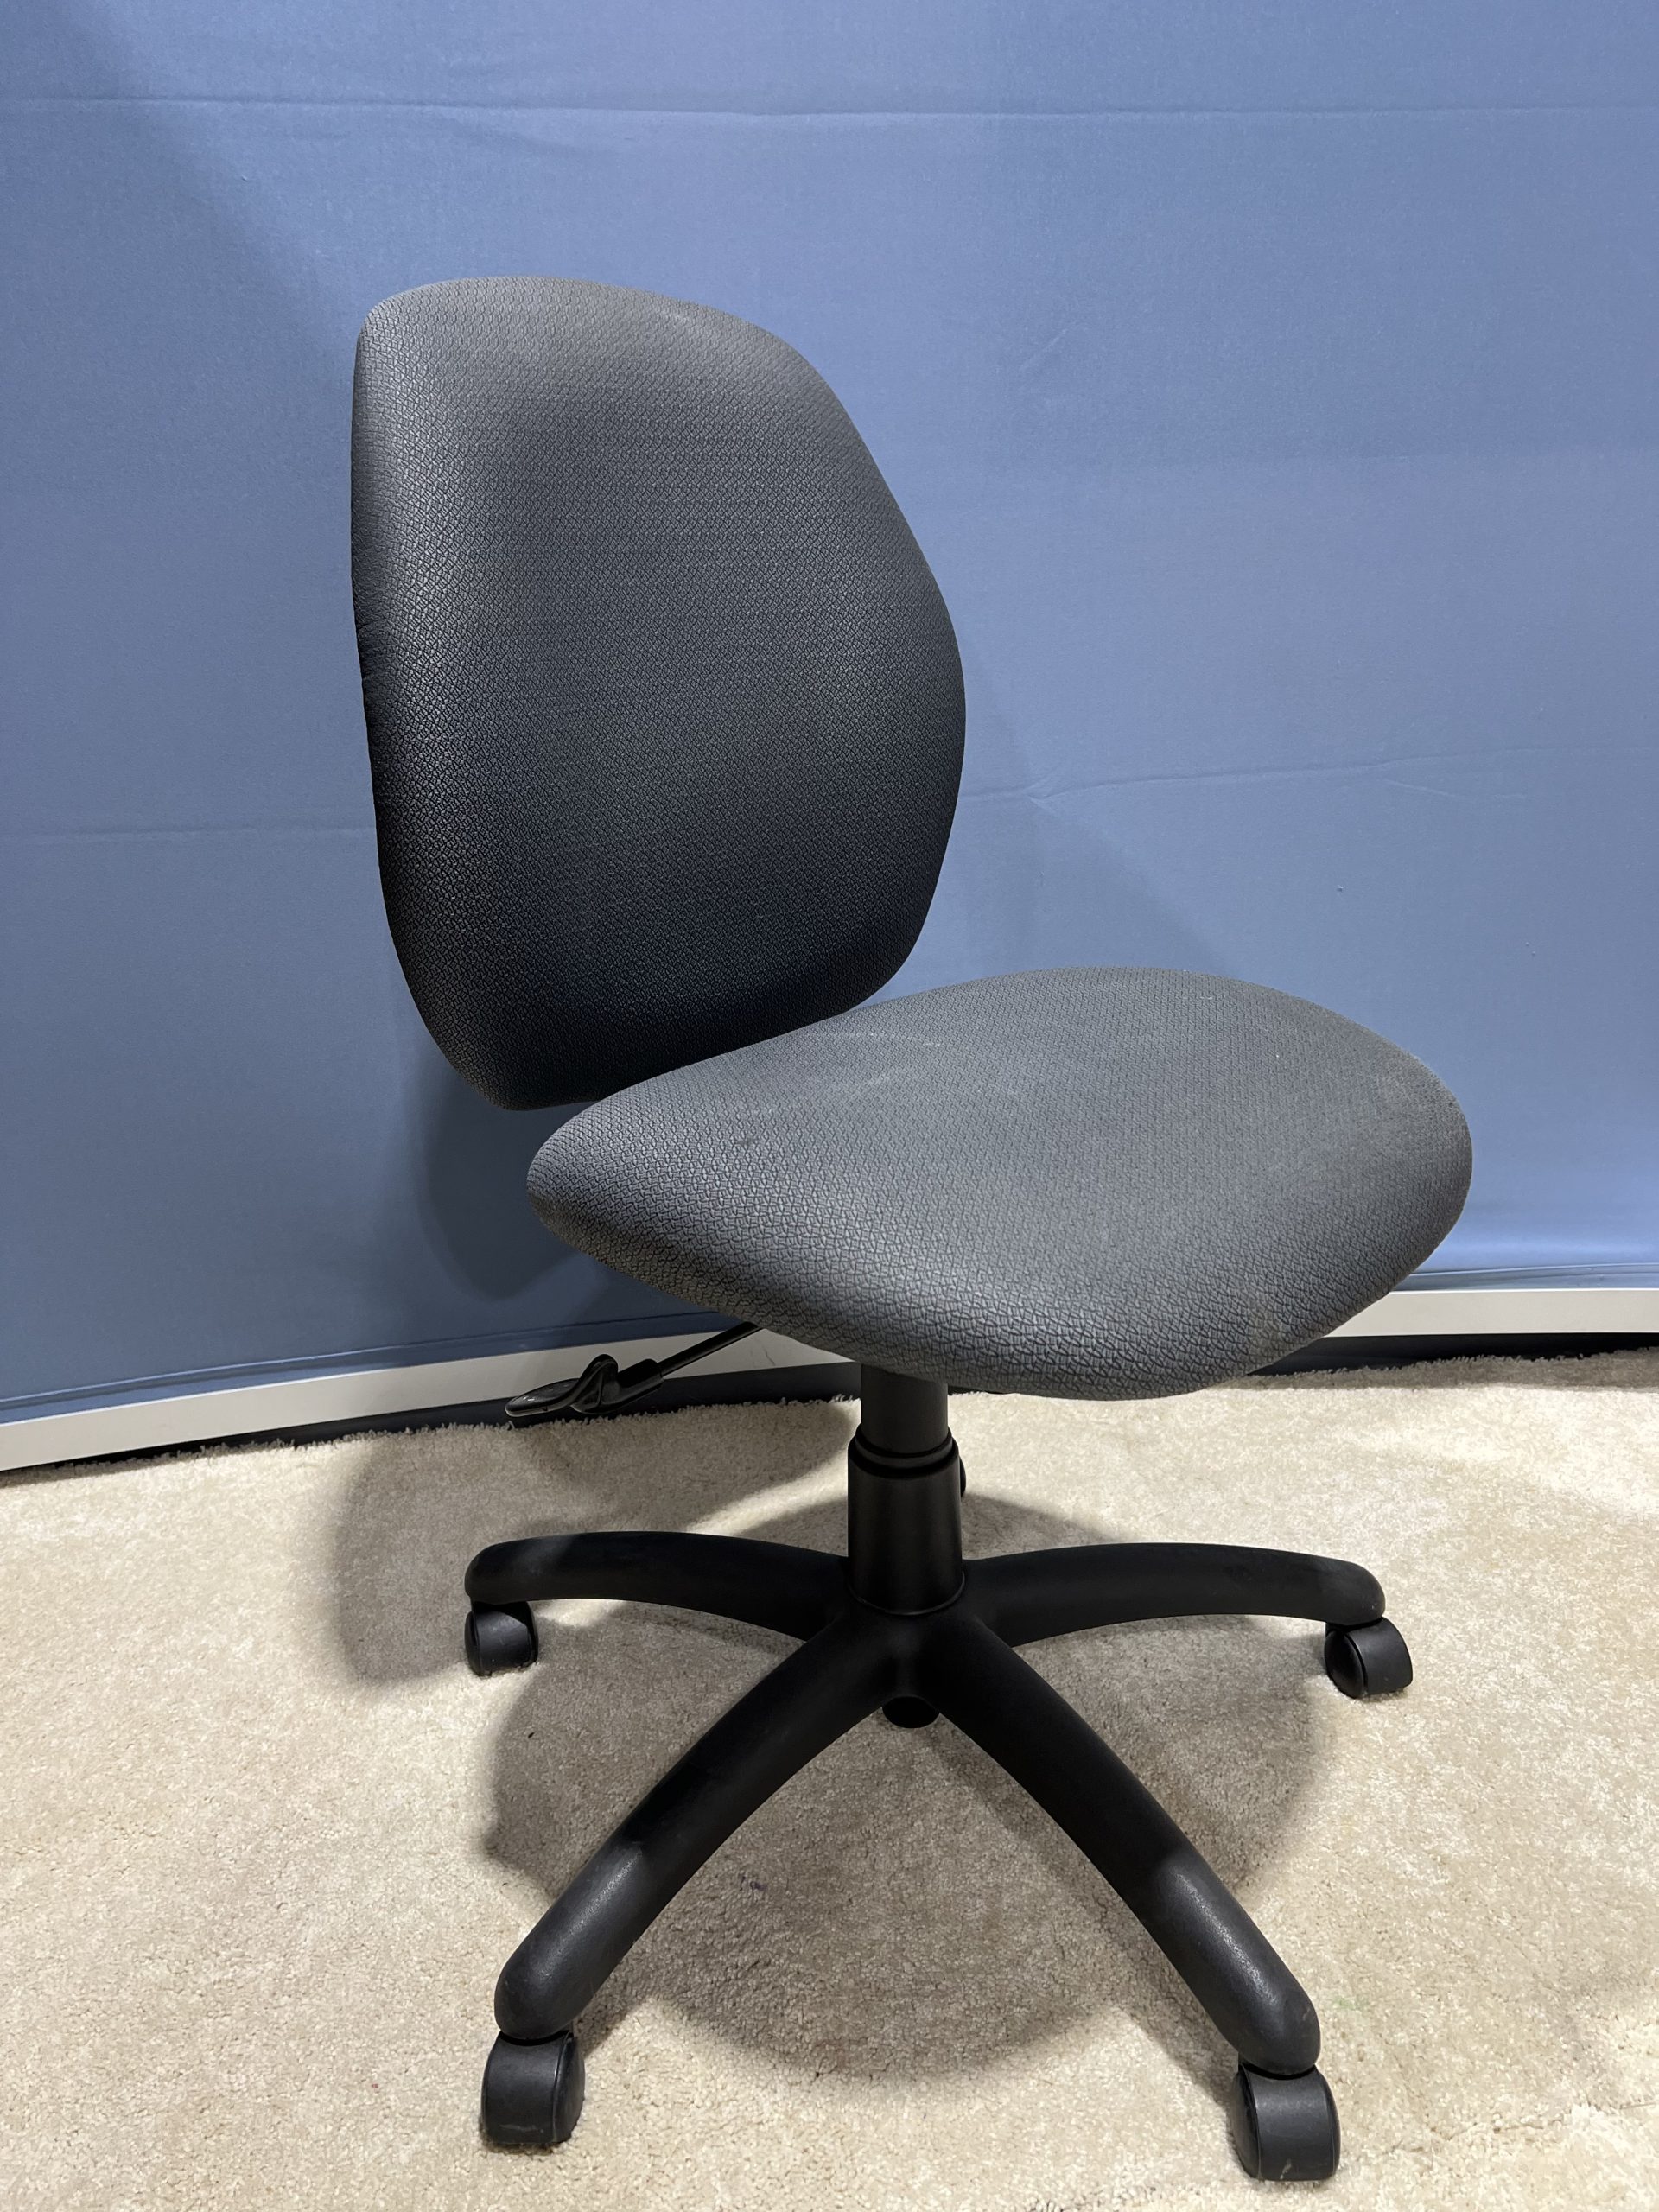 Chair Multitask Gray White Specks 1 of 1-image